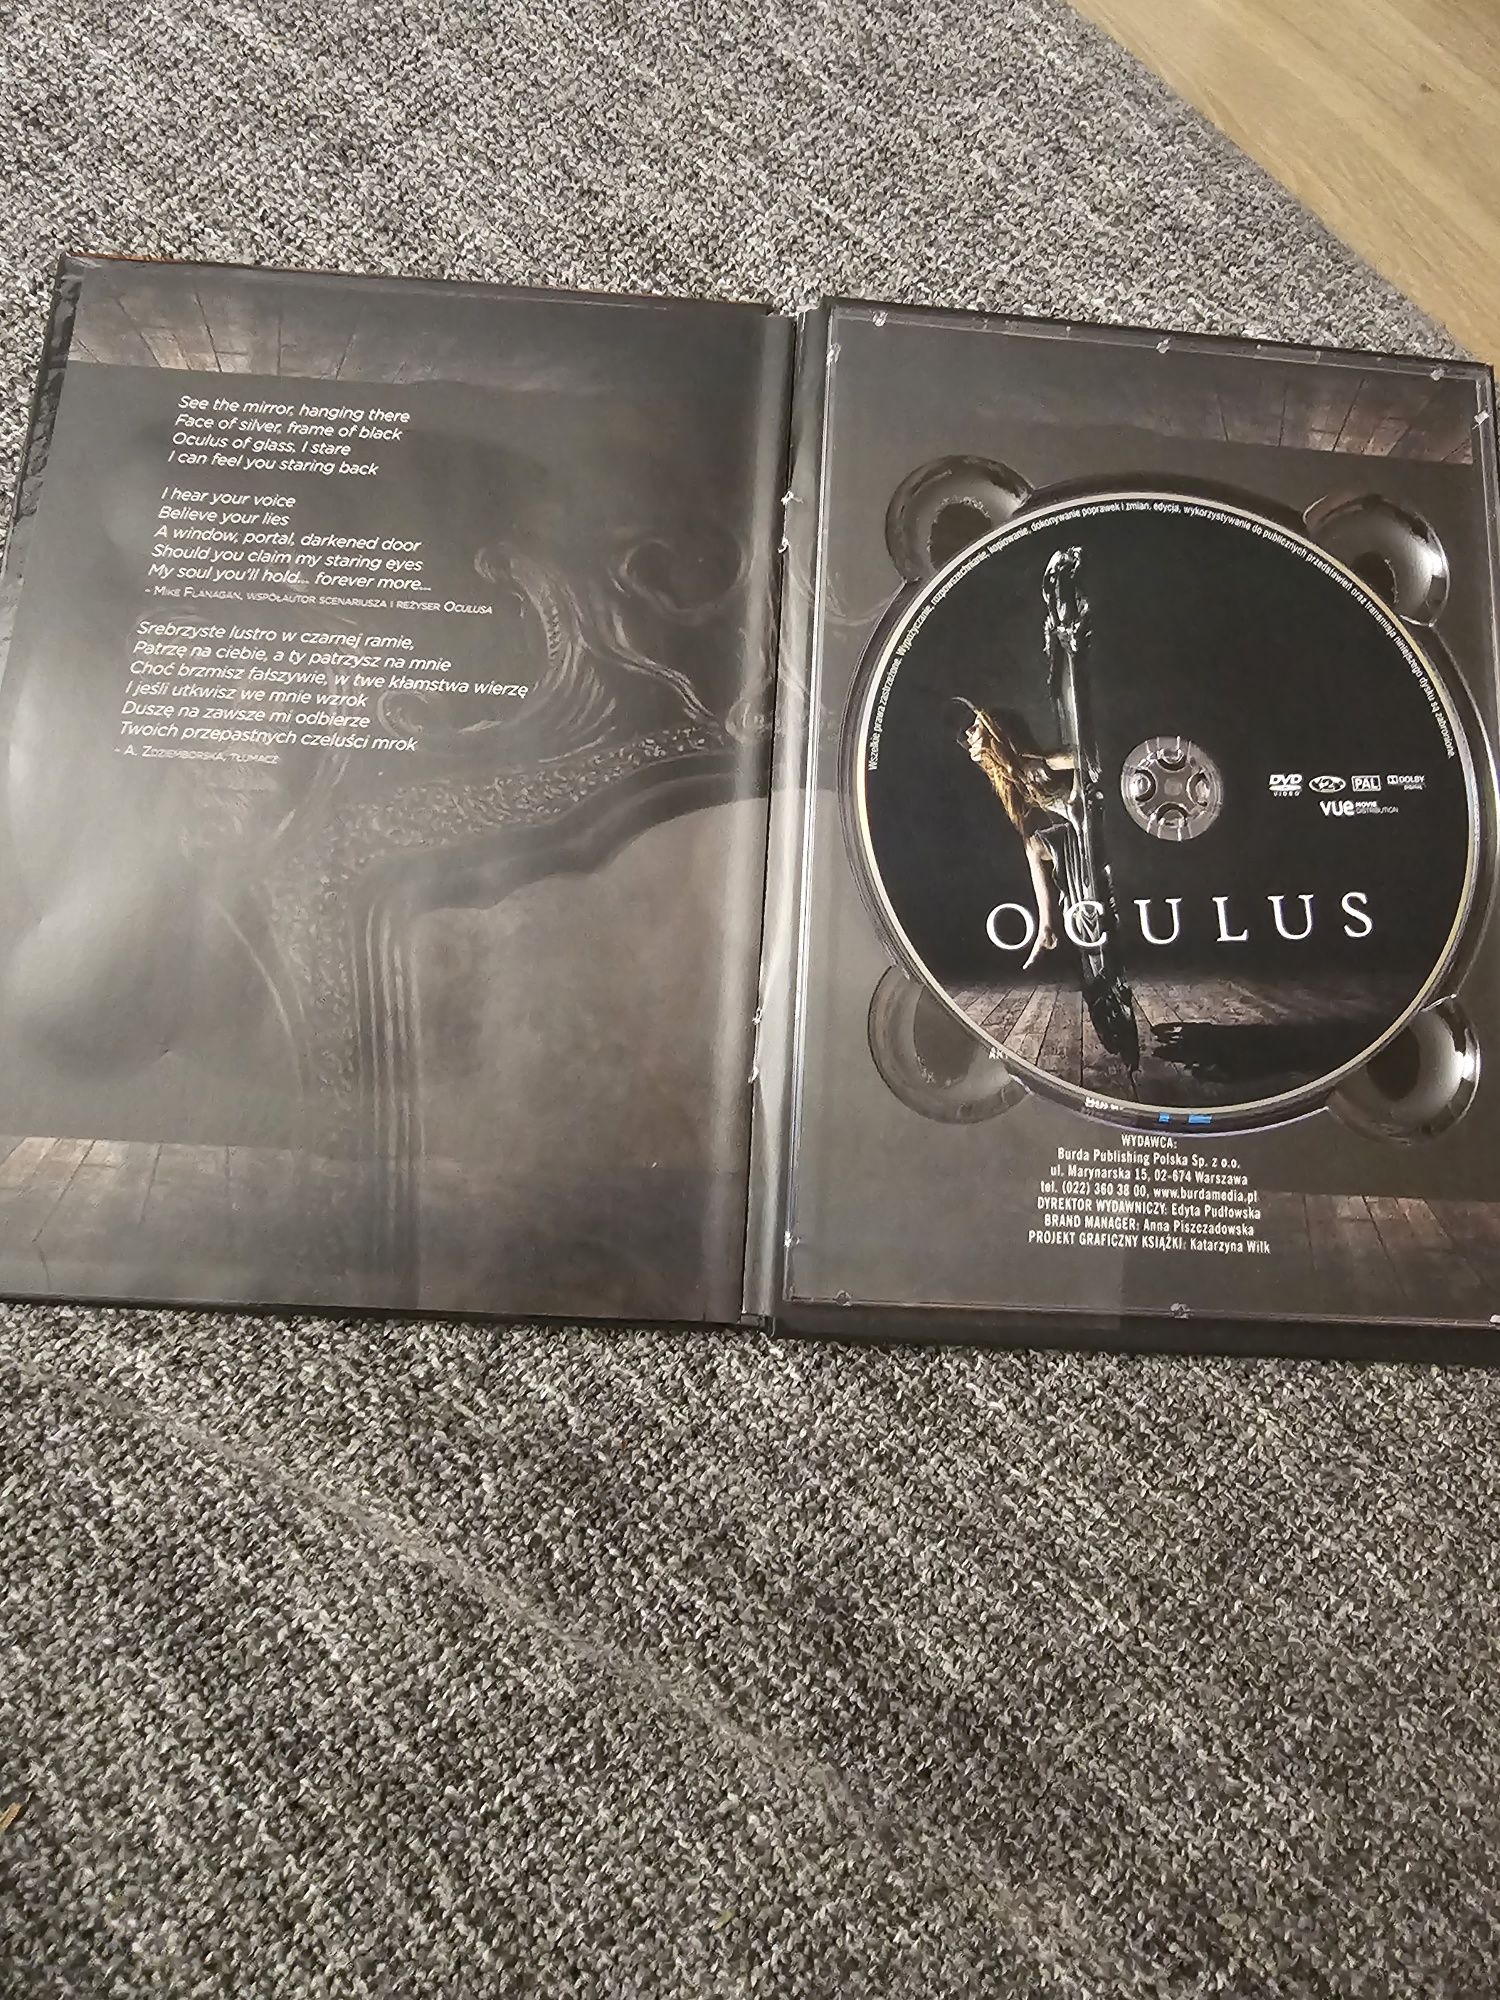 Oculus. Film DVD